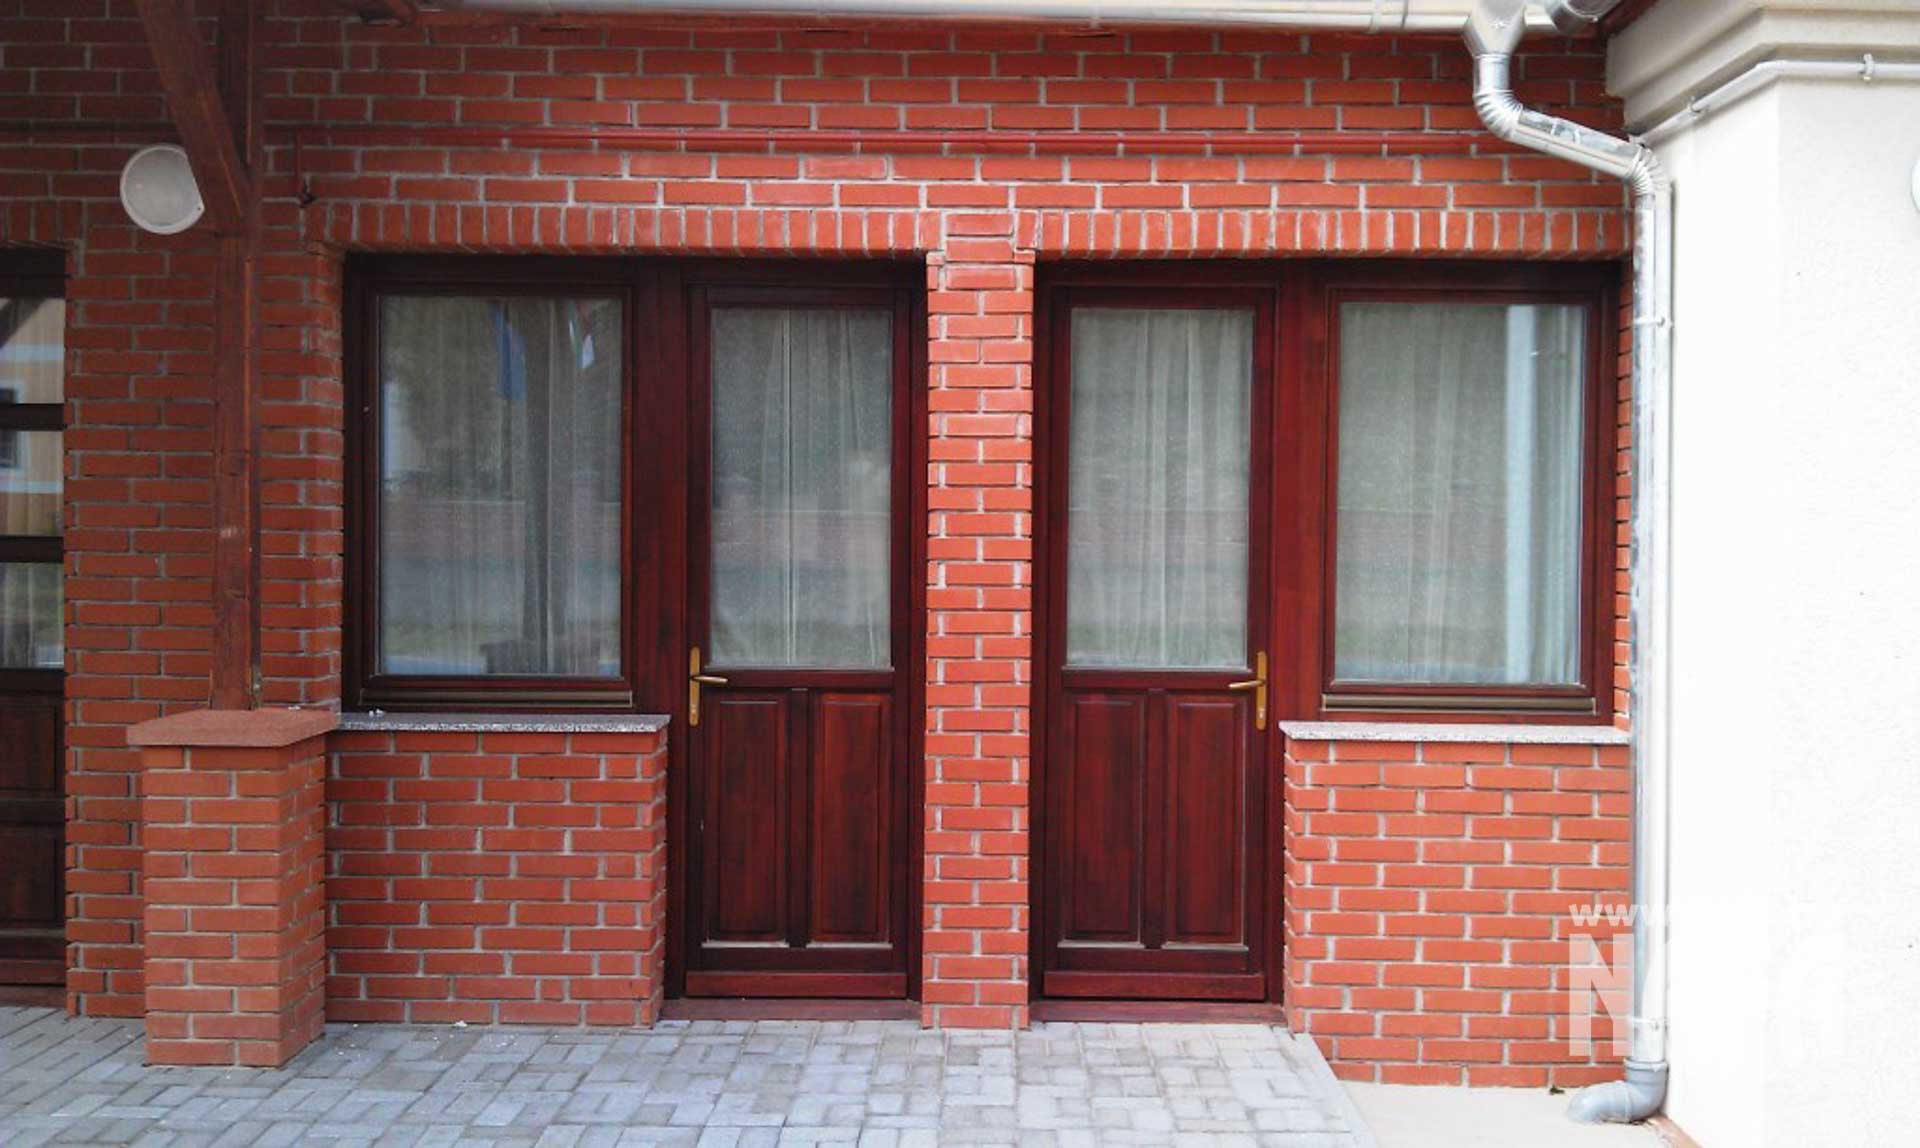 Fa nyílászárók, egyedi festett ablakok és bejáratiajtók, Somogyszob Iskola